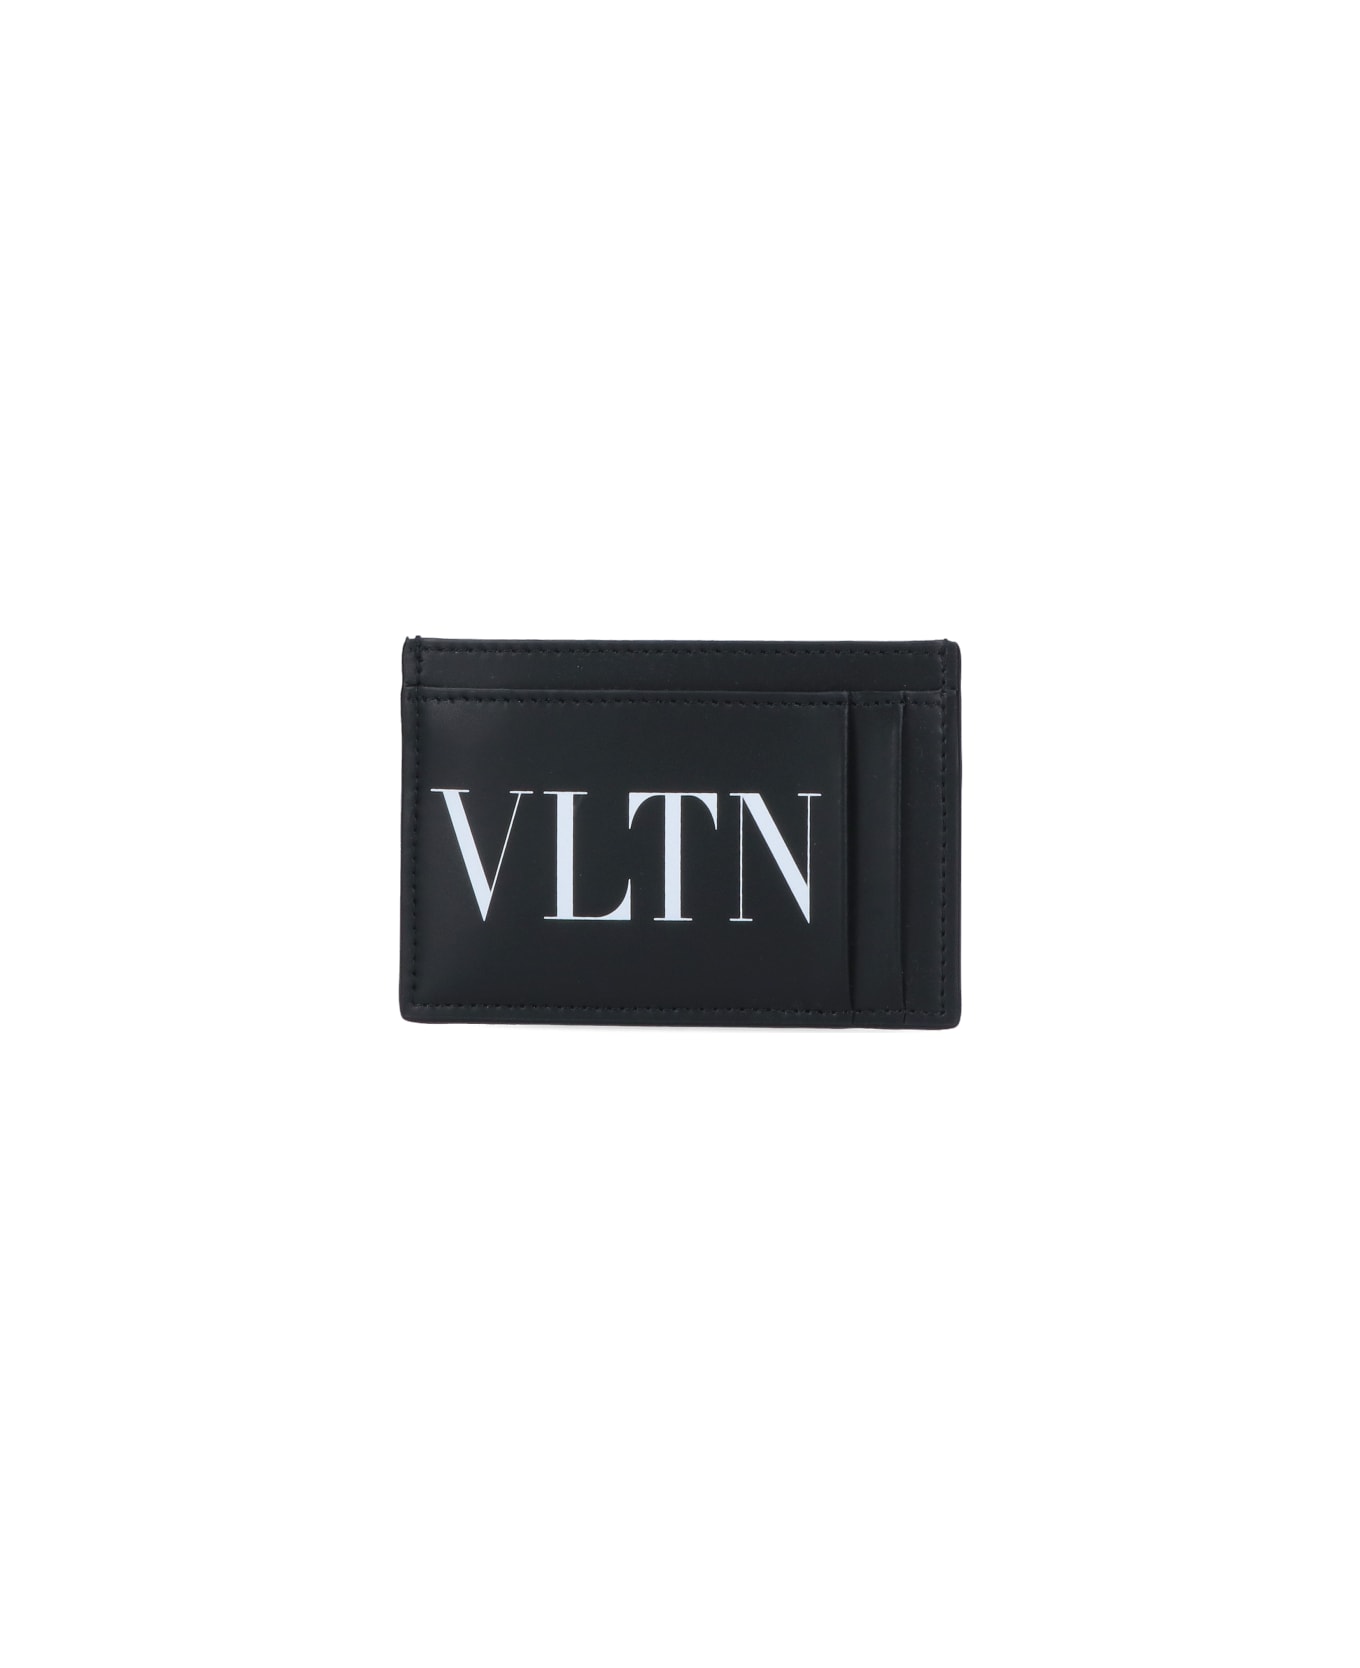 Valentino Garavani Vltn Cardholder - Black   財布